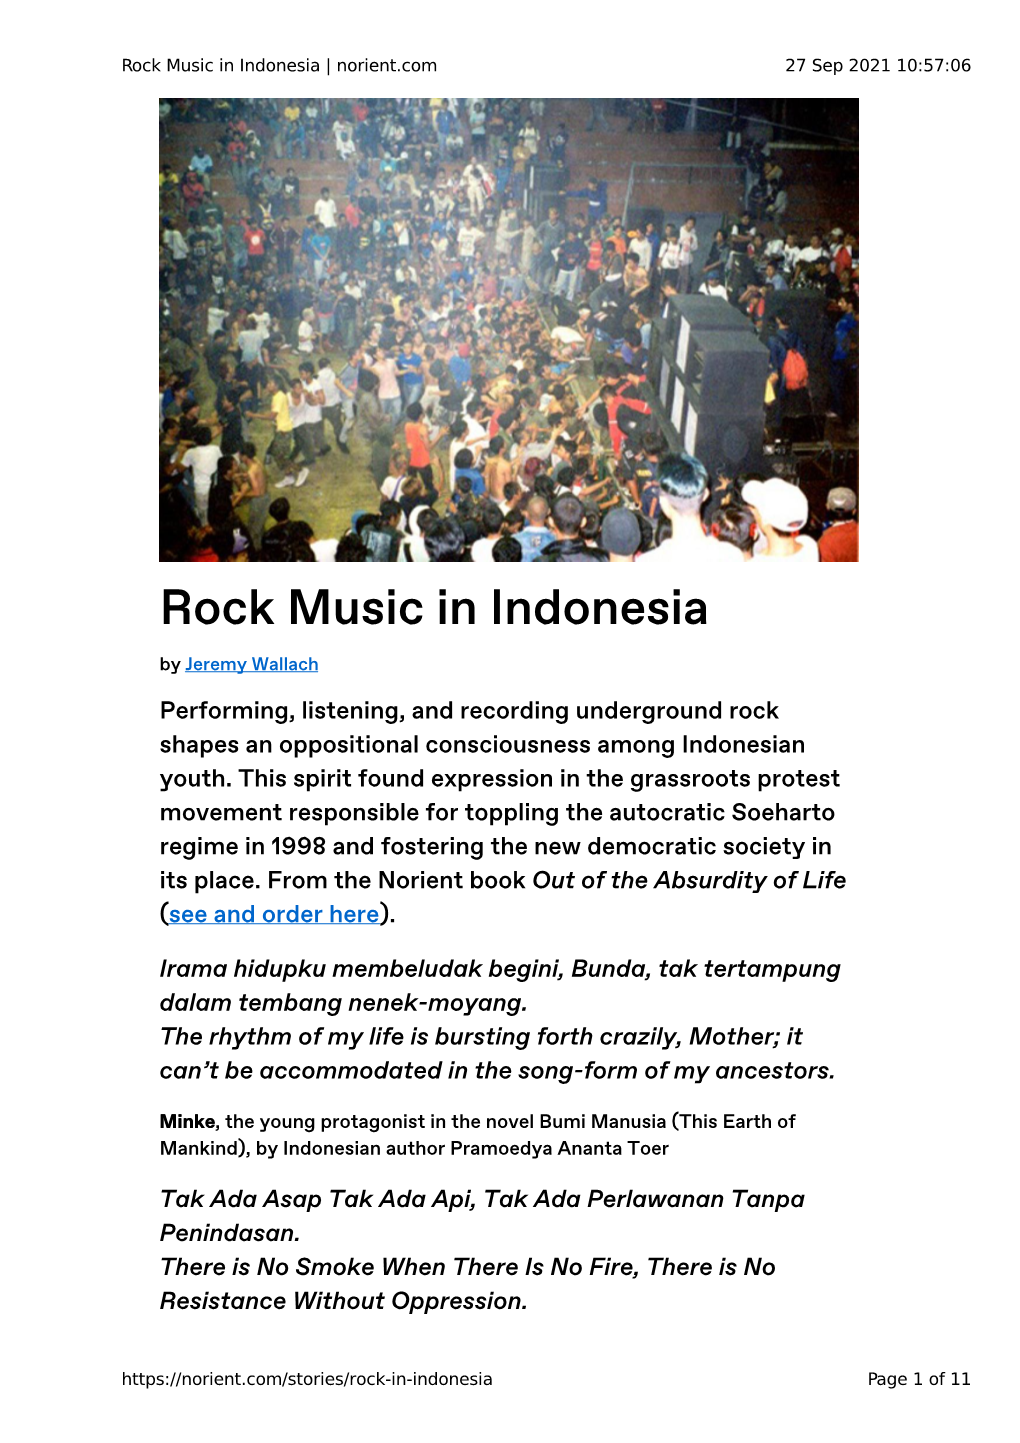 Rock Music in Indonesia | Norient.Com 27 Sep 2021 10:57:06